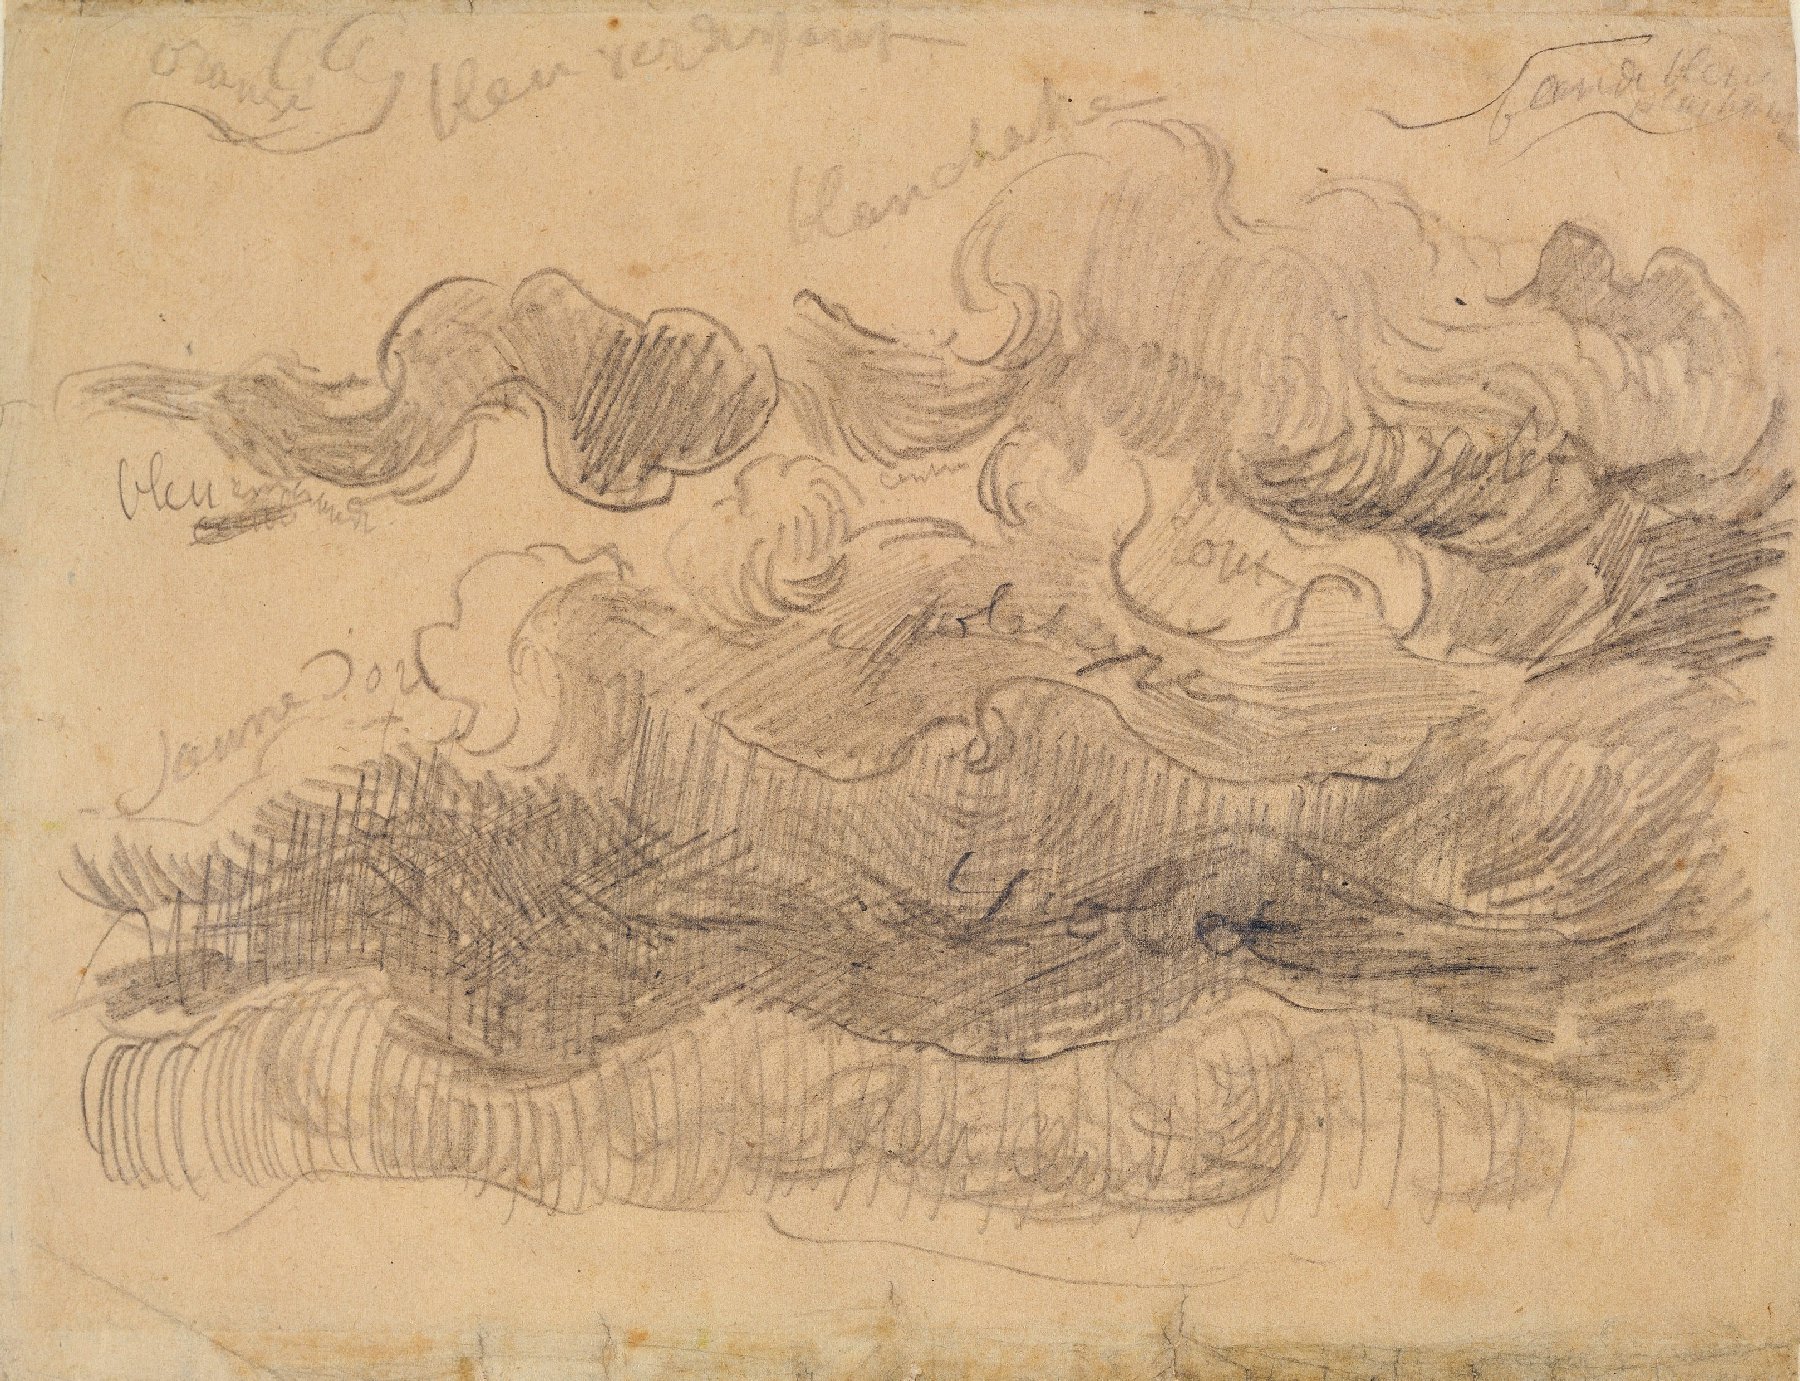 Wolkenstudie Vincent van Gogh (1853 - 1890), Saint-Rémy-de-Provence, maart-april 1890